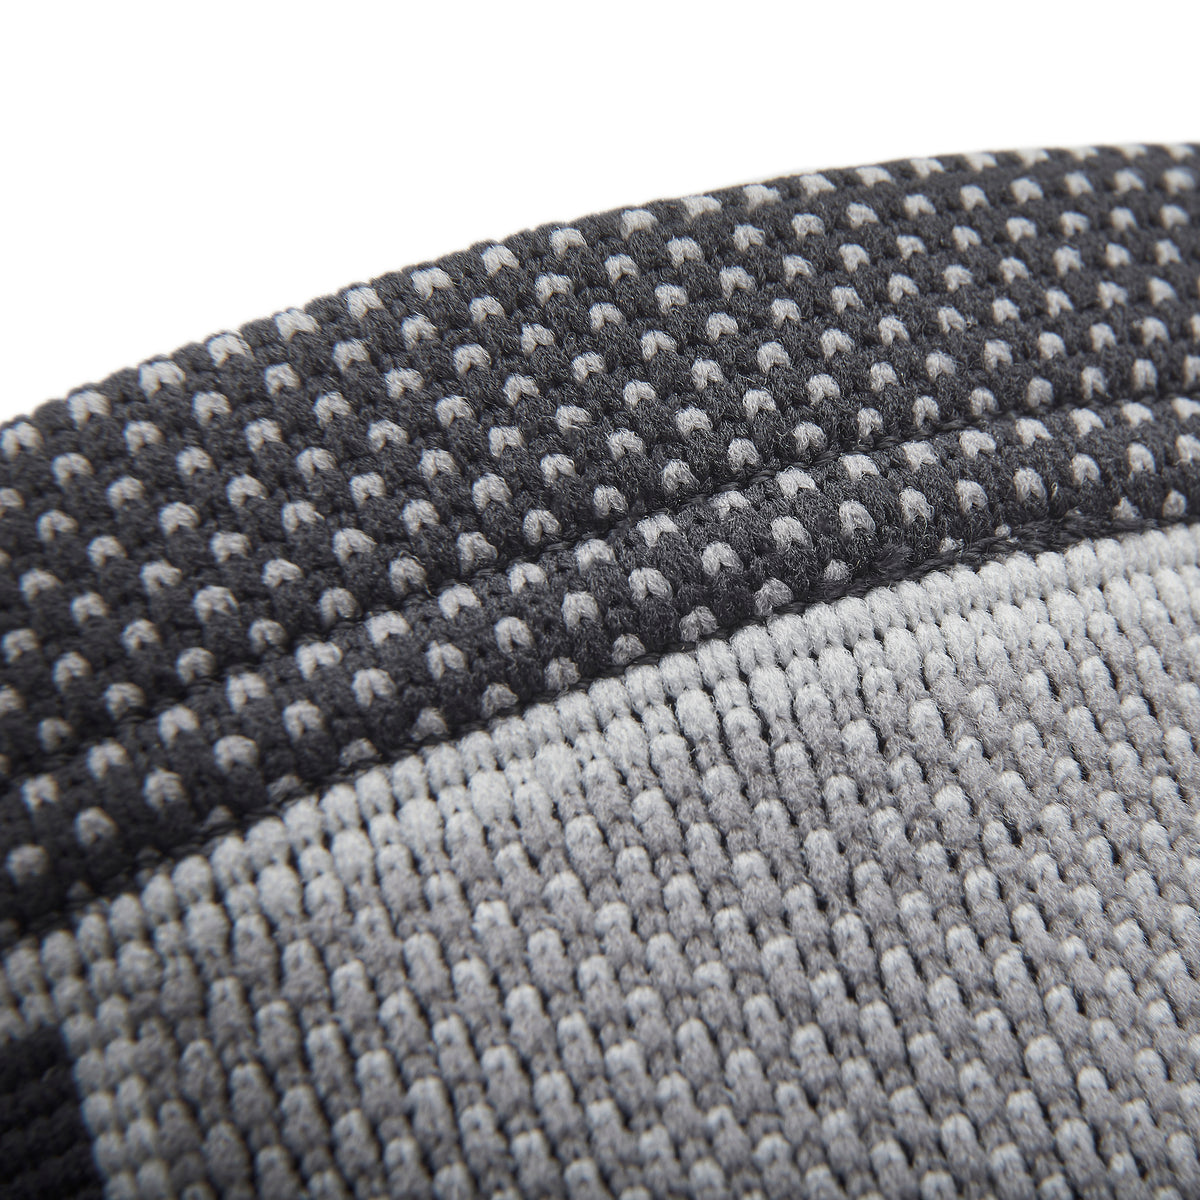 adidas Premium Wrist Support seam closeup